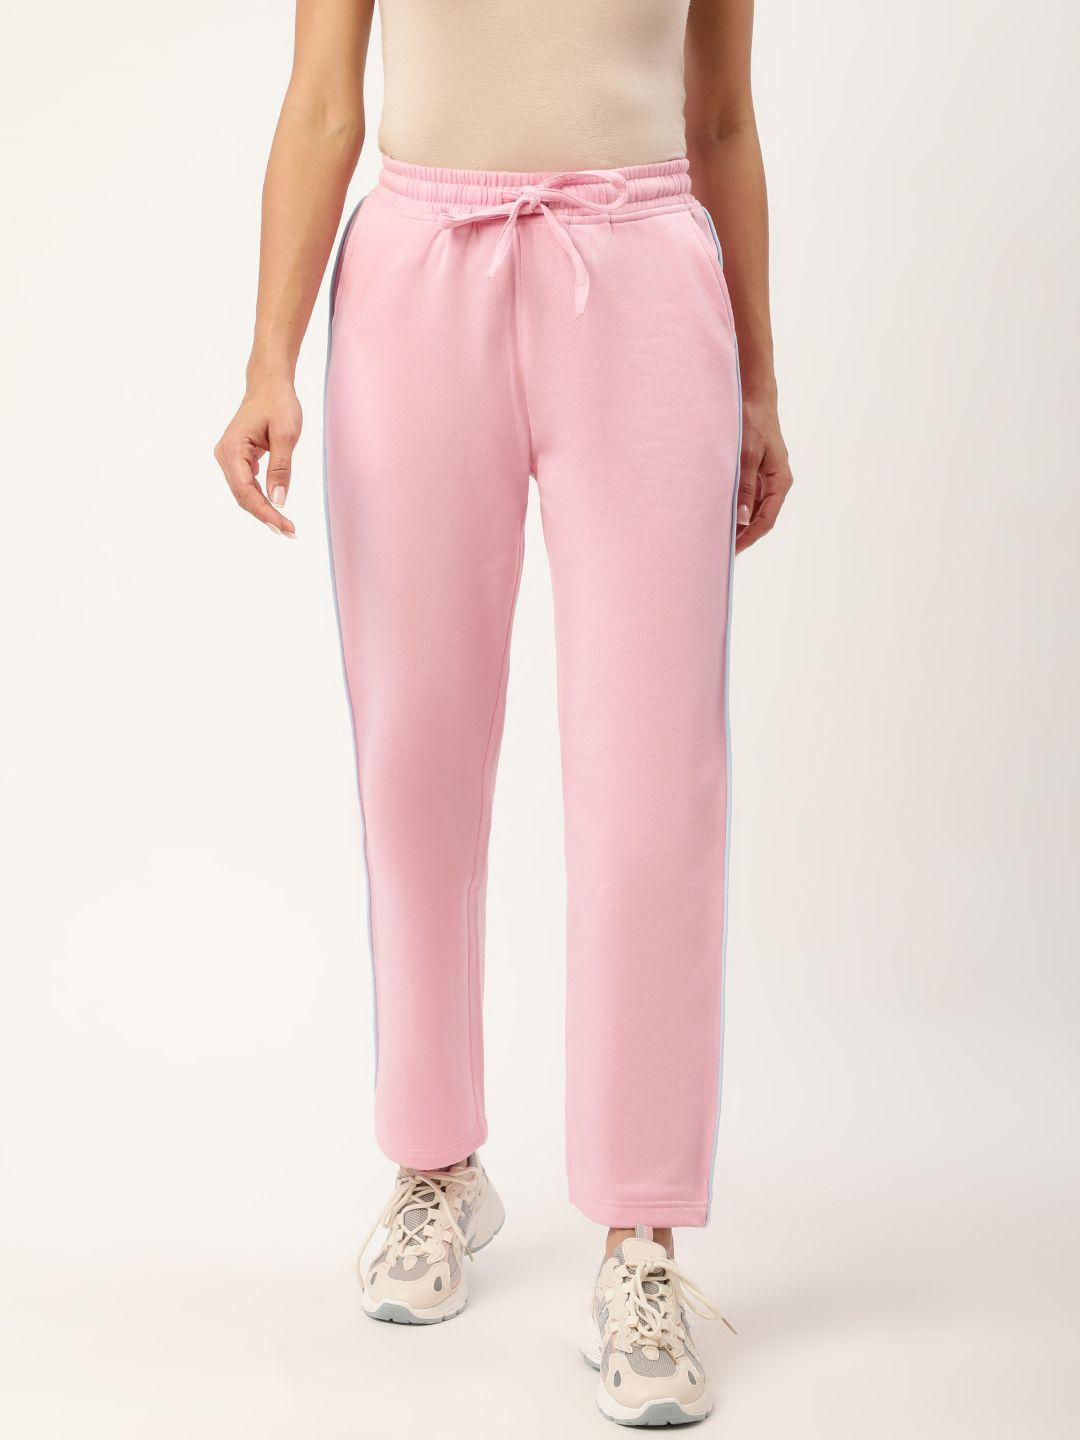 alsace lorraine paris women pink solid track pants